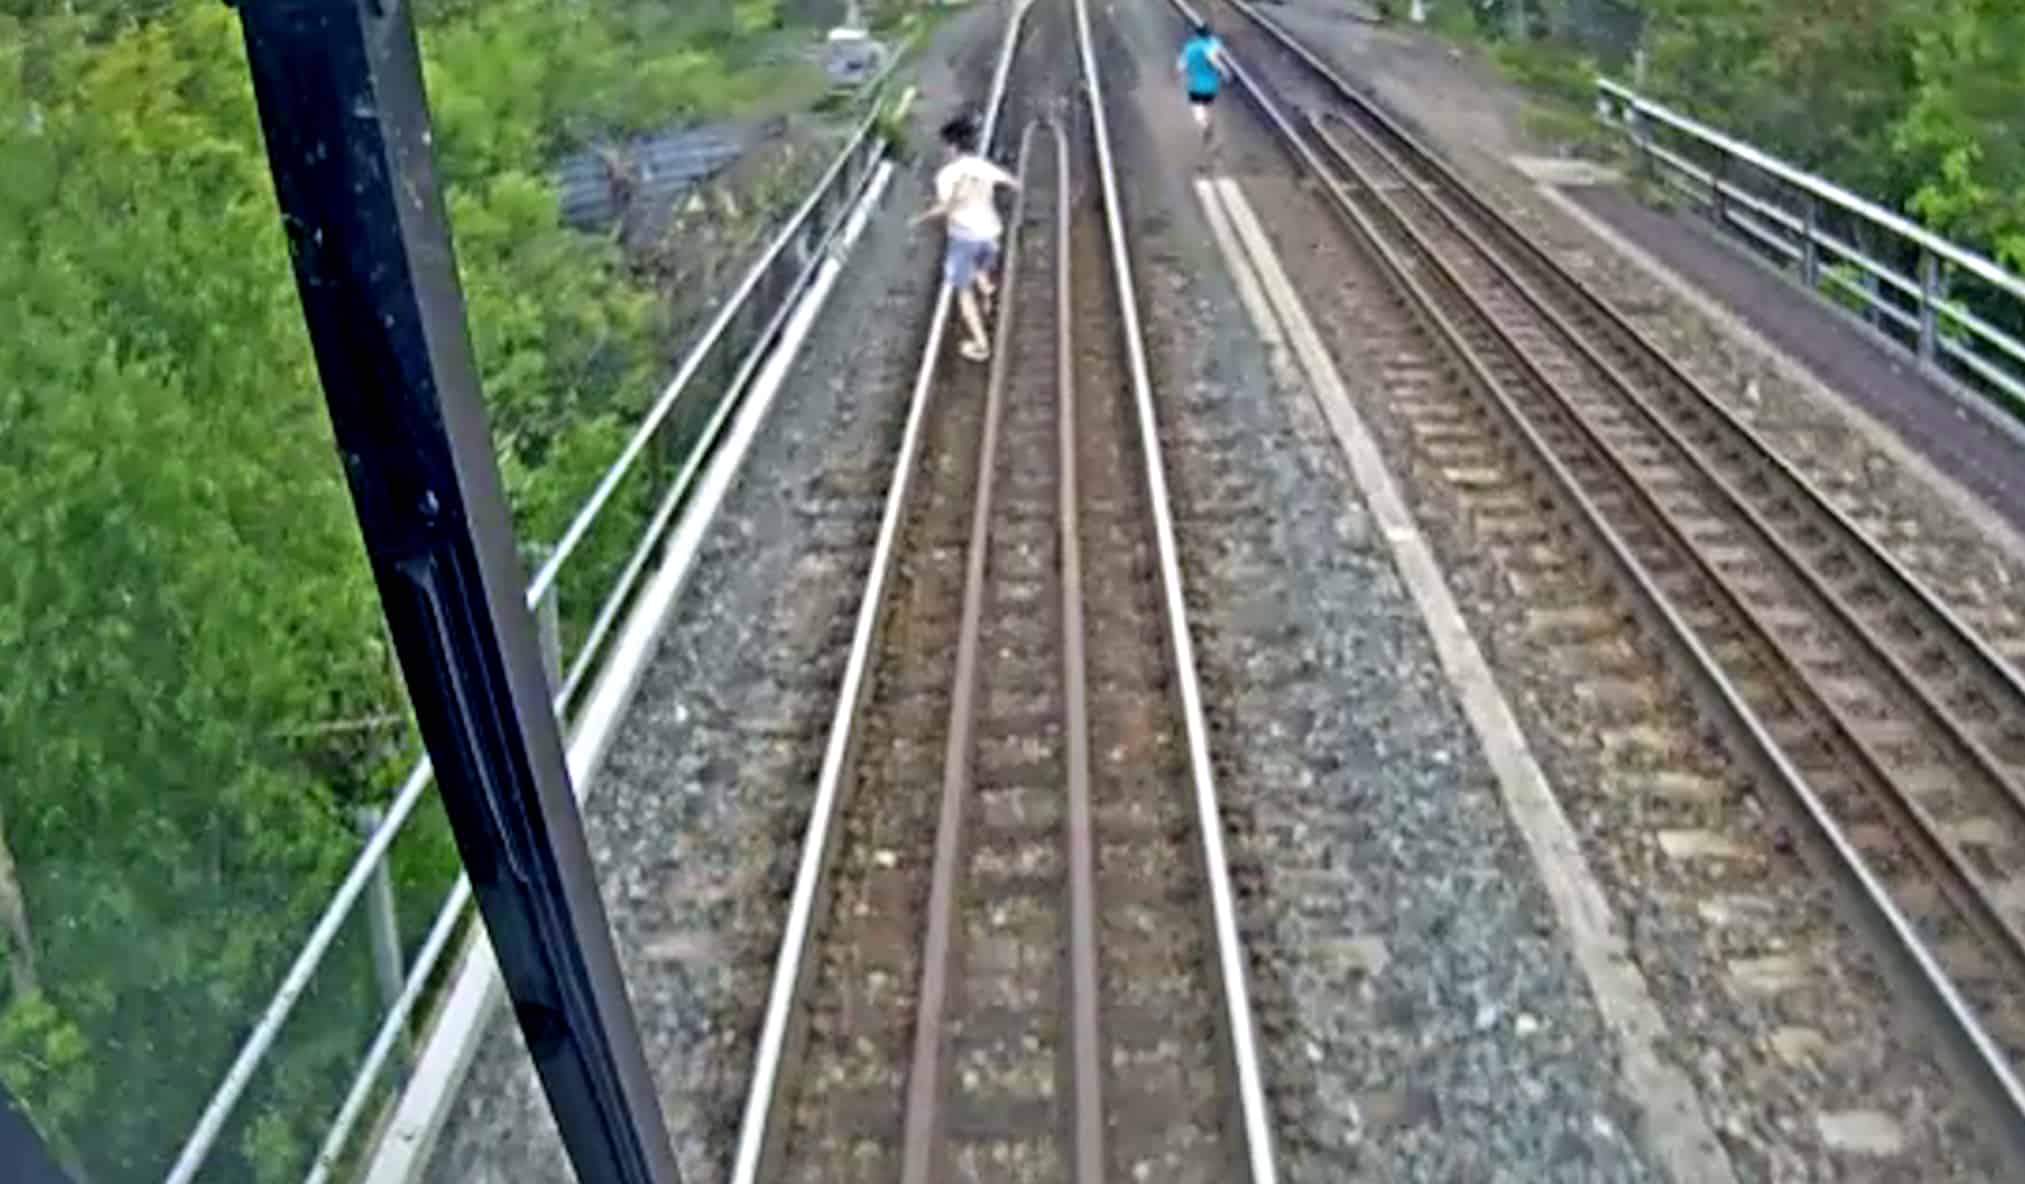 Go Train almost hit child